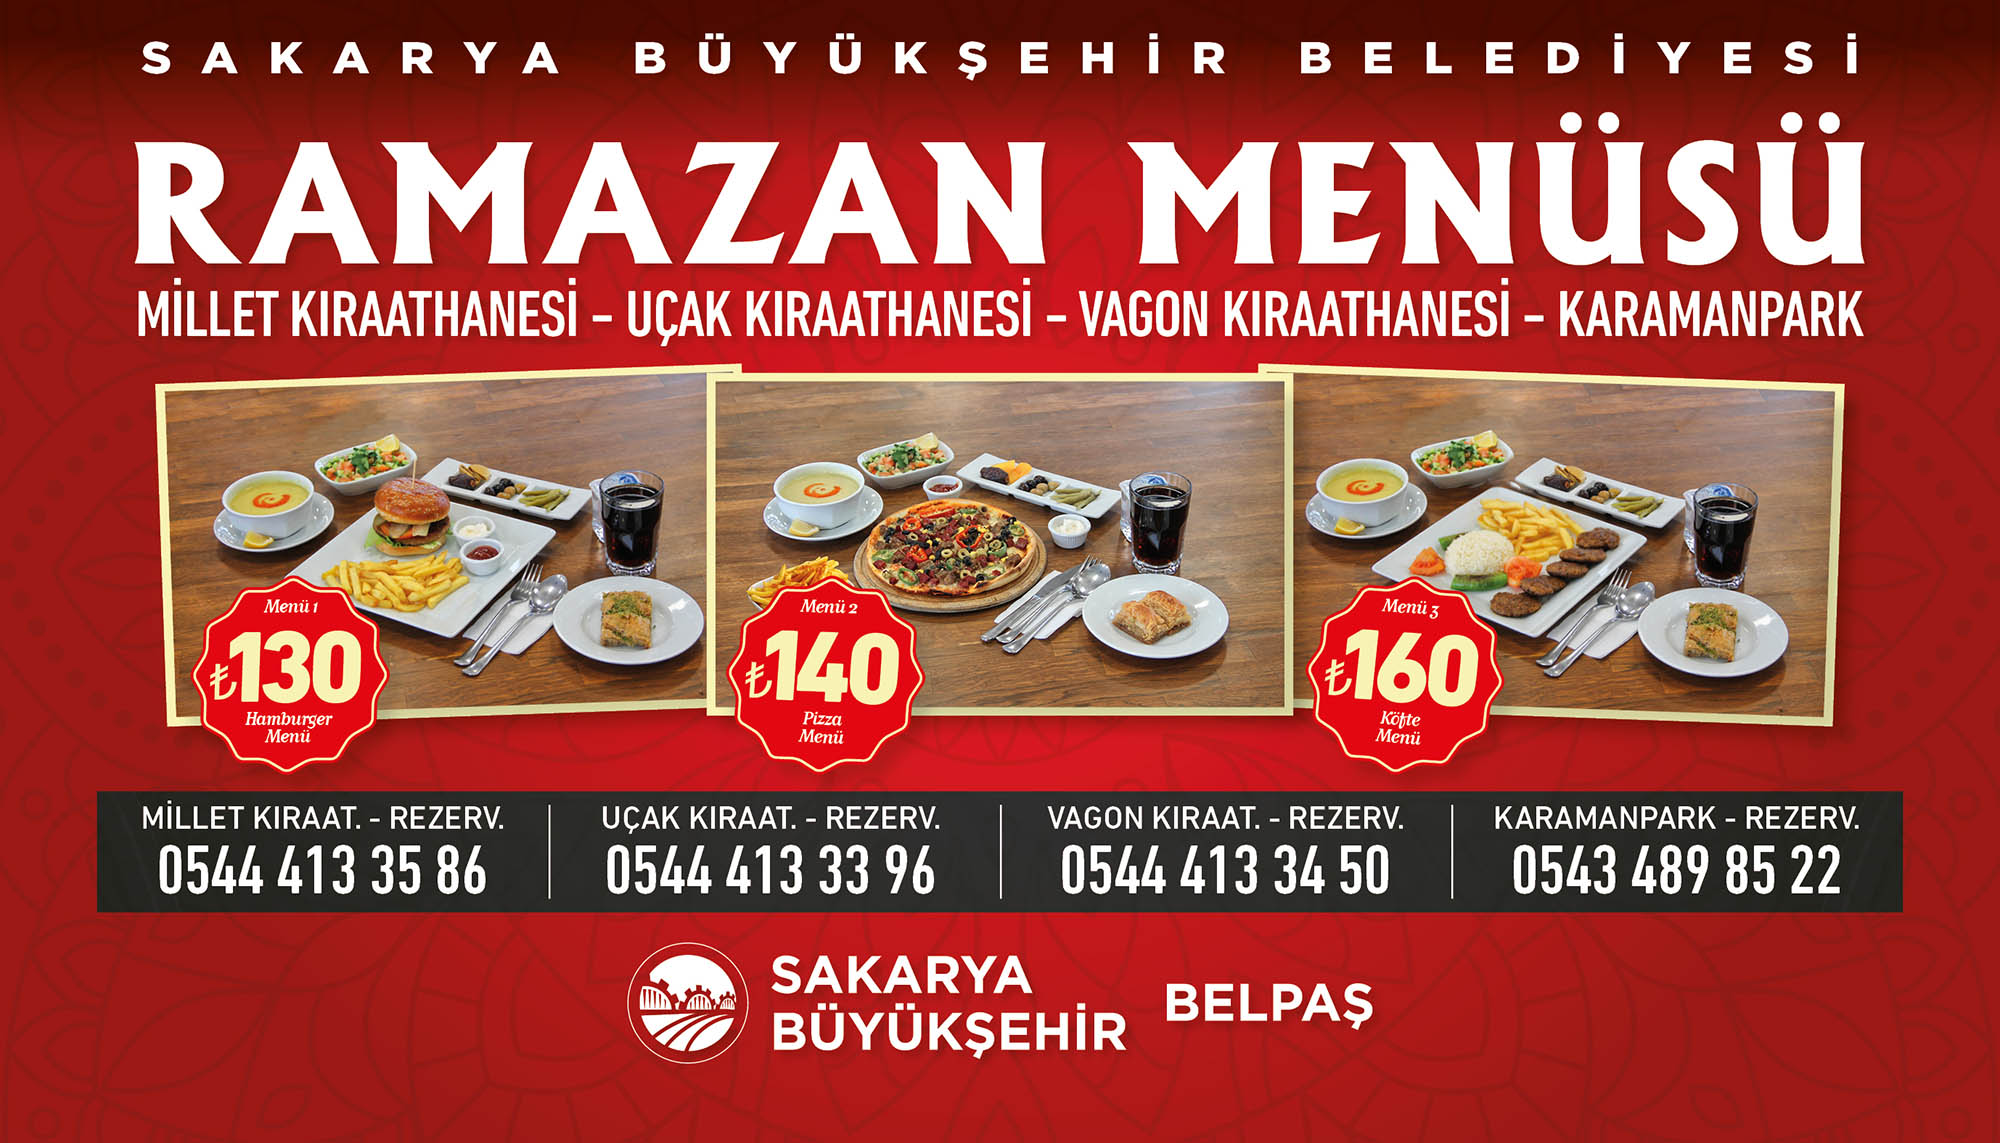 Ramazan’da lezzetin adresi Büyükşehir: İftarda uygun fiyata en güzel hizmet